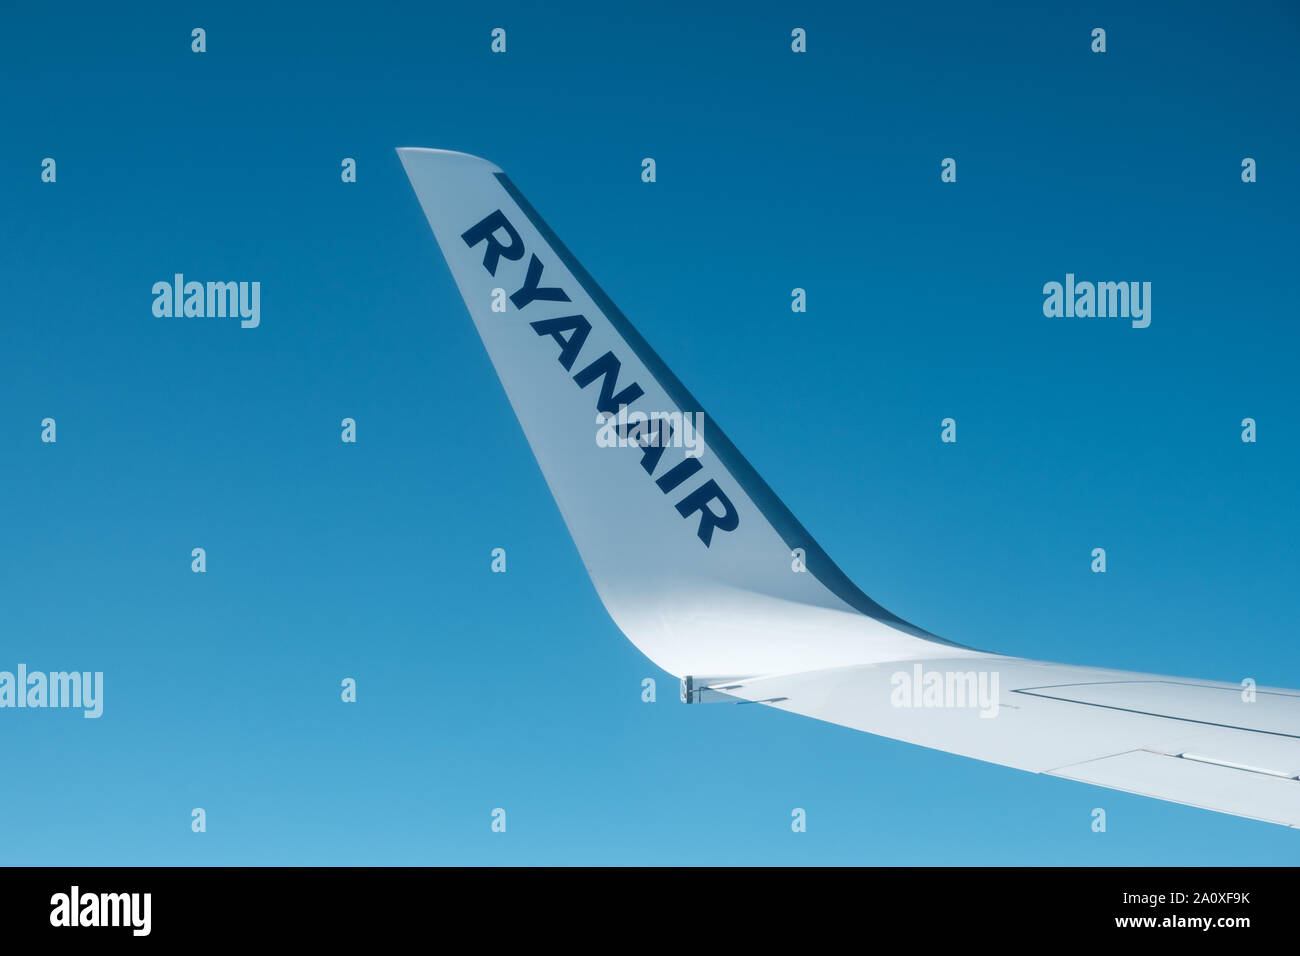 Tenerife, Espagne, août 2019 : RyanAir logo sur l'aile. Ryanair est une compagnie aérienne à bas prix Banque D'Images